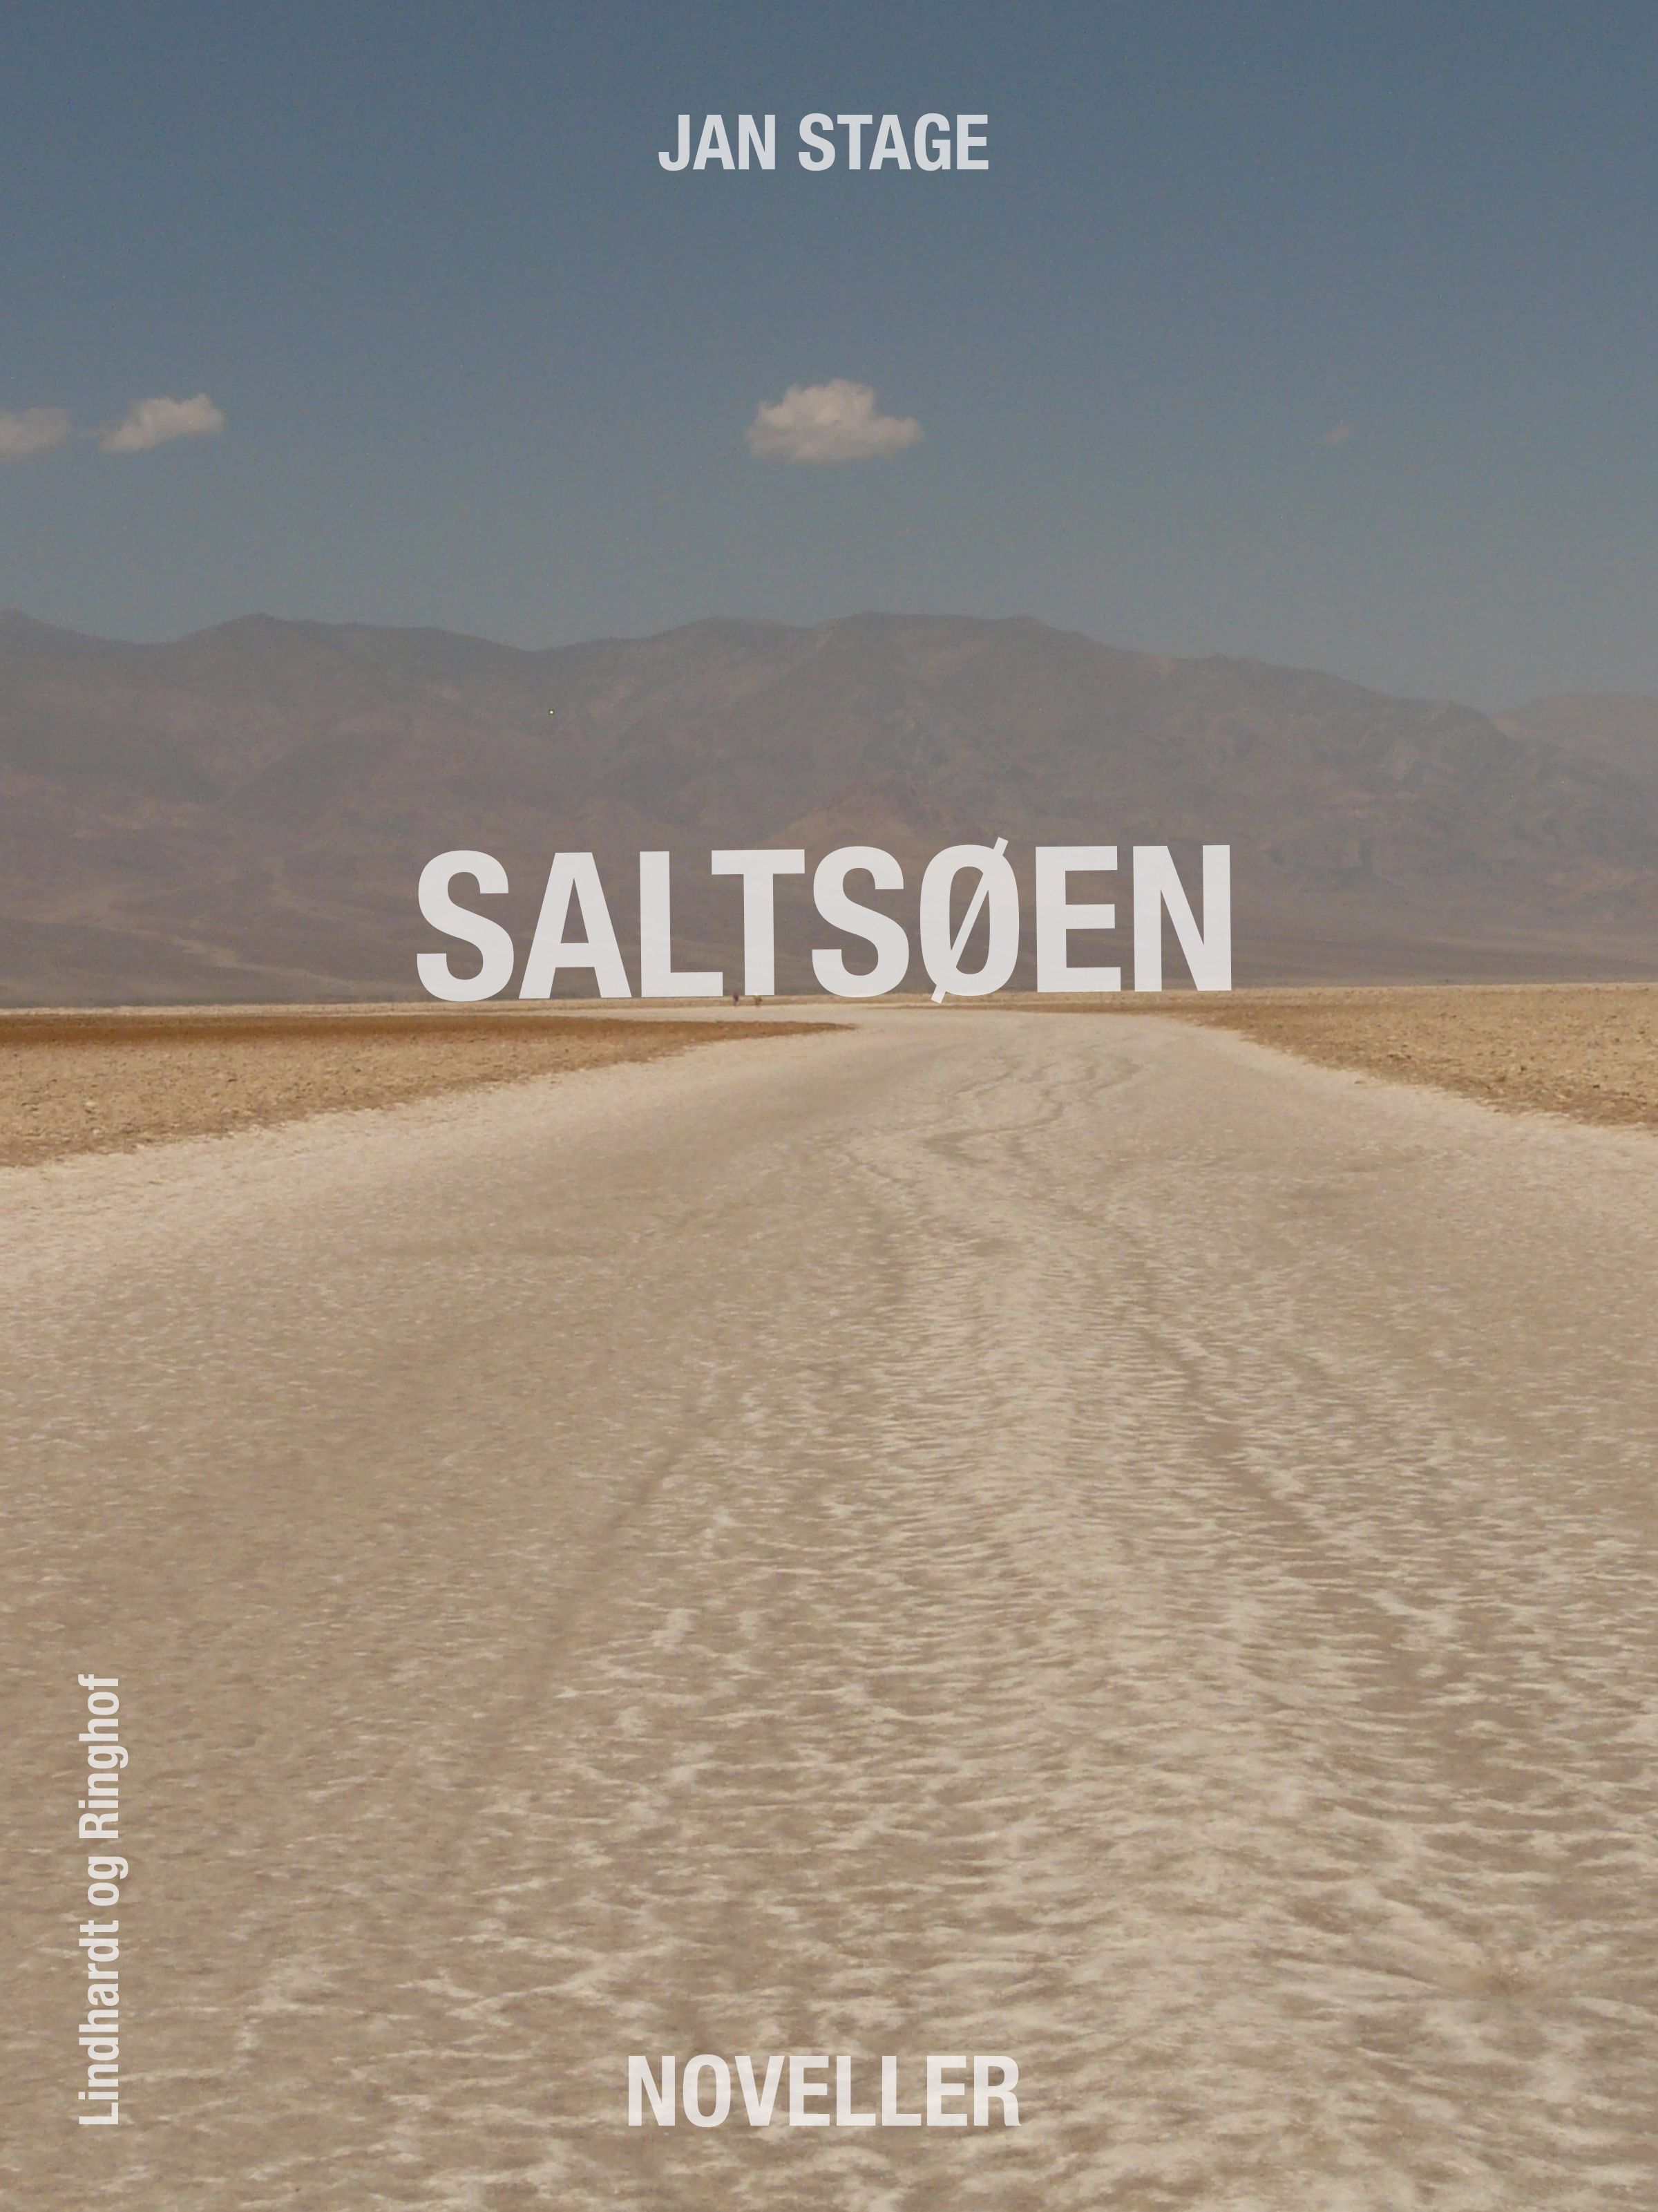 Saltsøen, eBook by Jan Stage